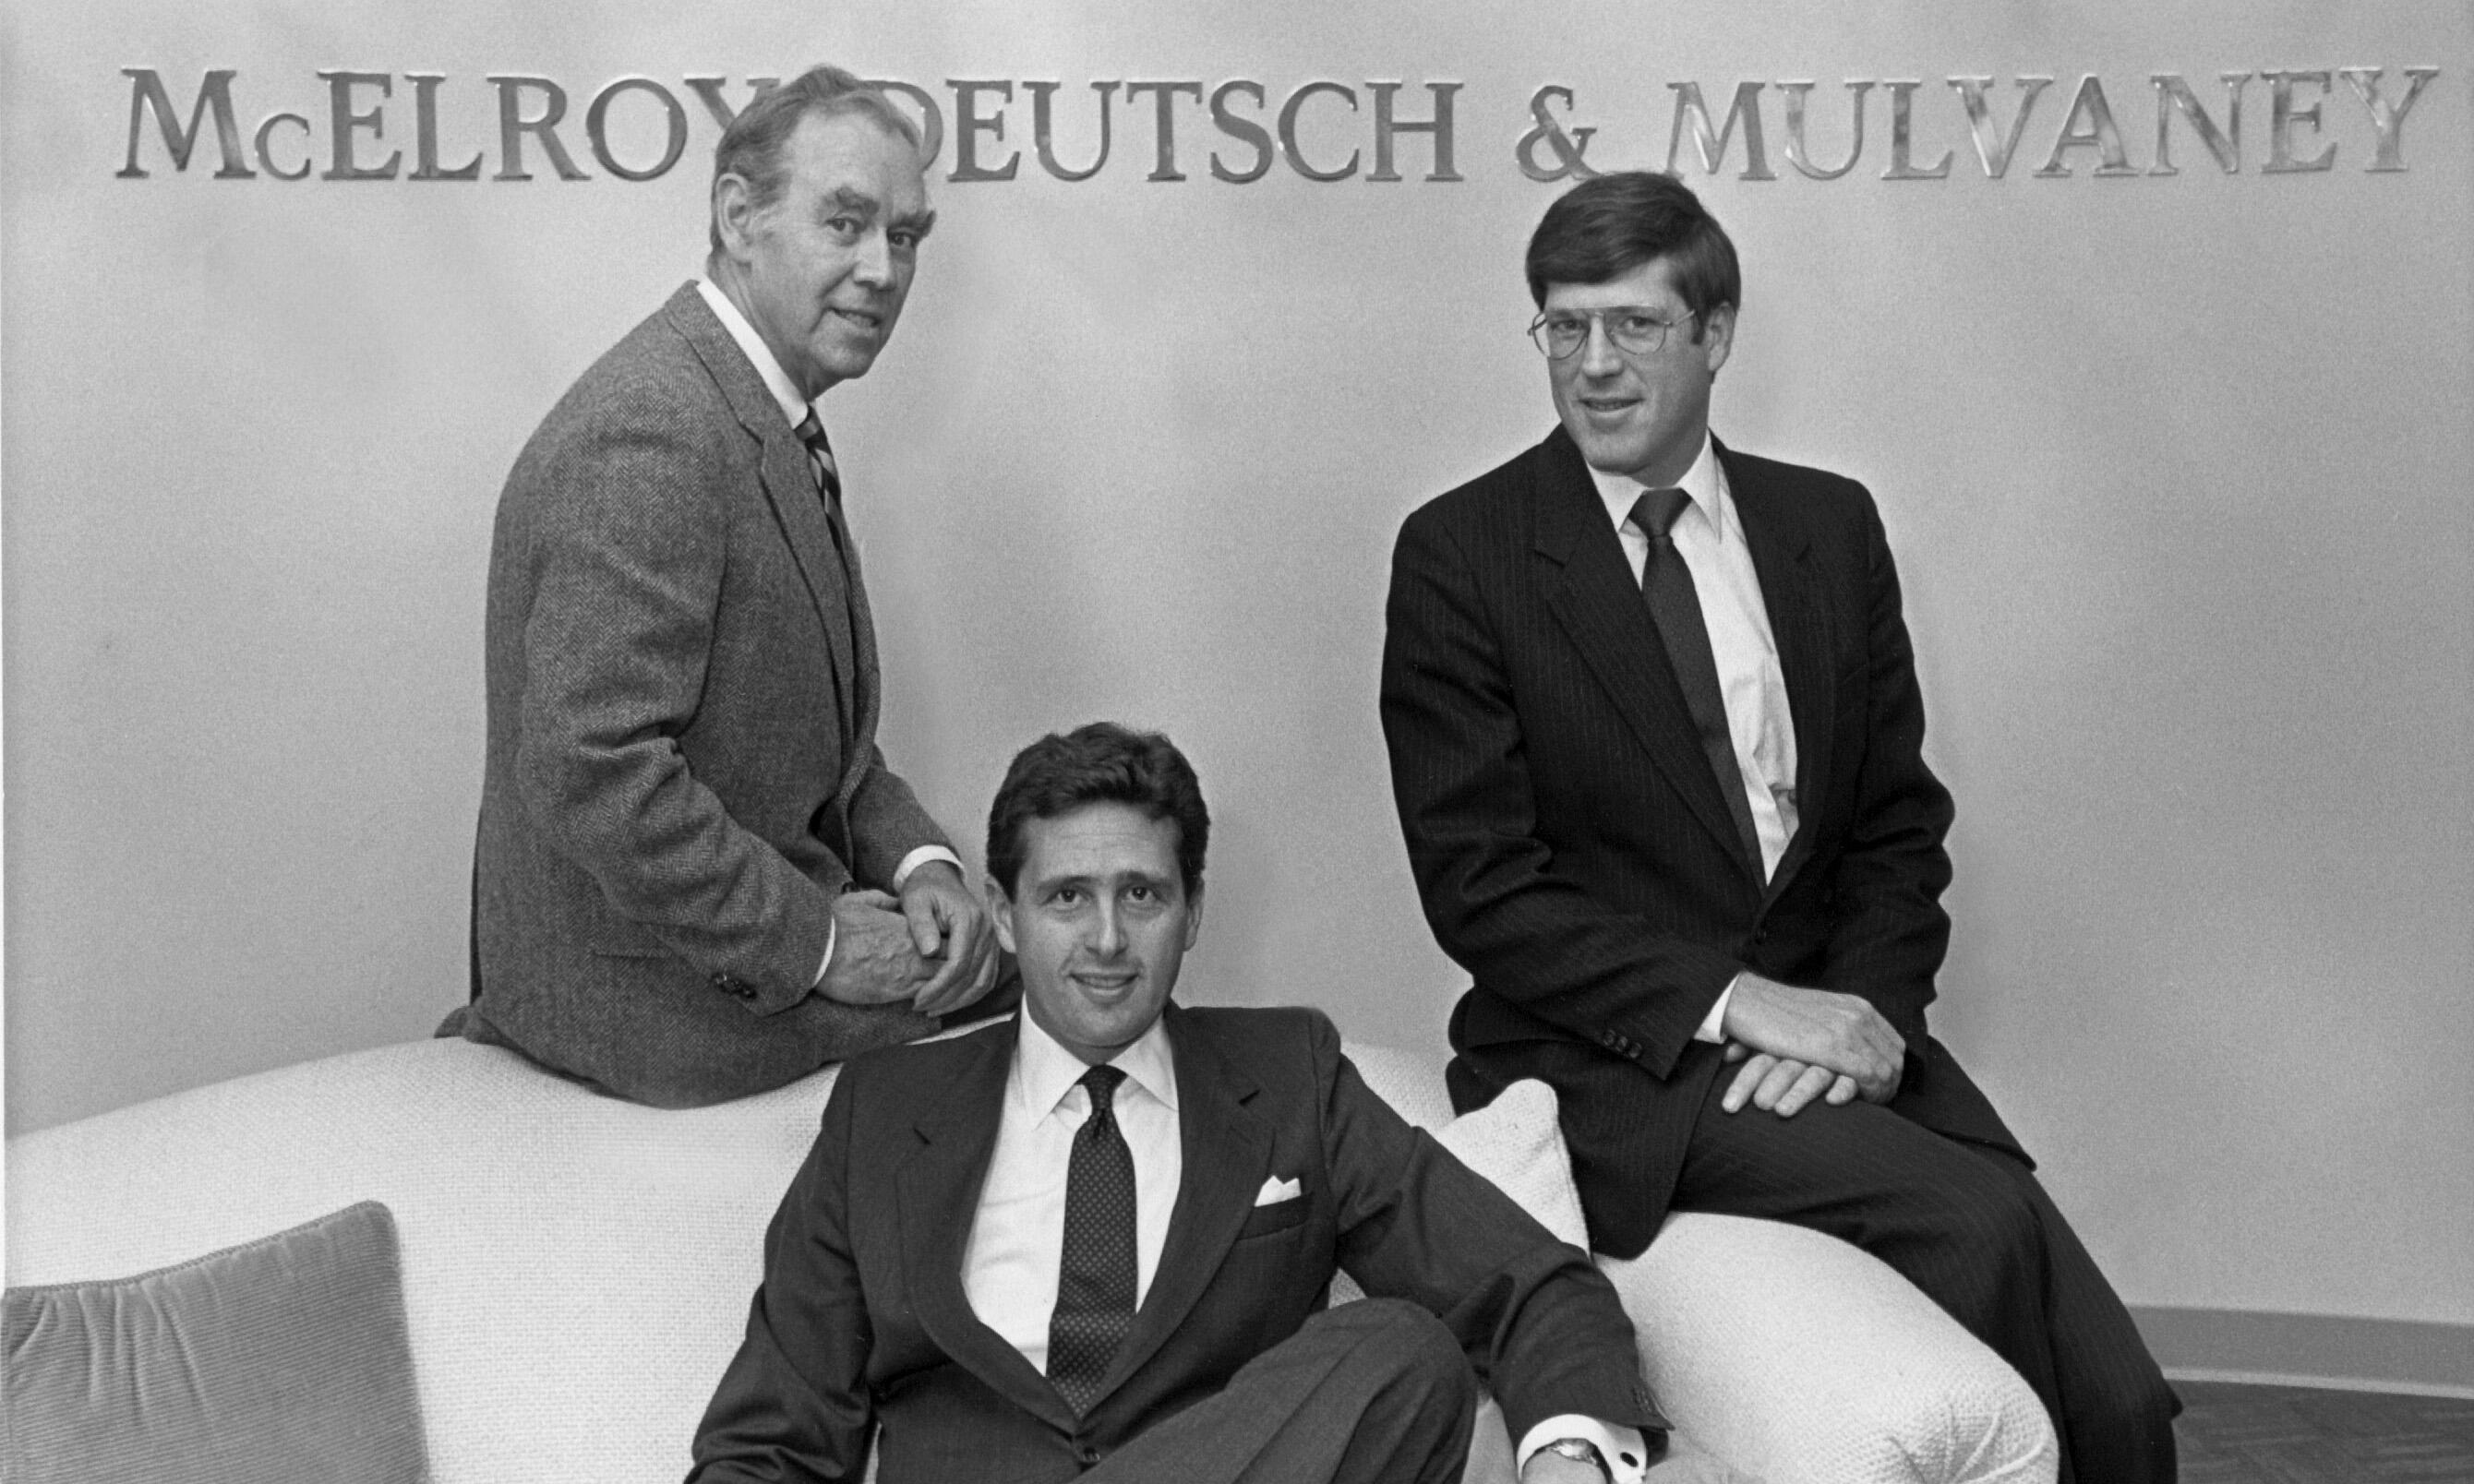 McElroy Deutsch founders in a 1984 photo - William McElroy, Edward Deutsch and James Mulvaney